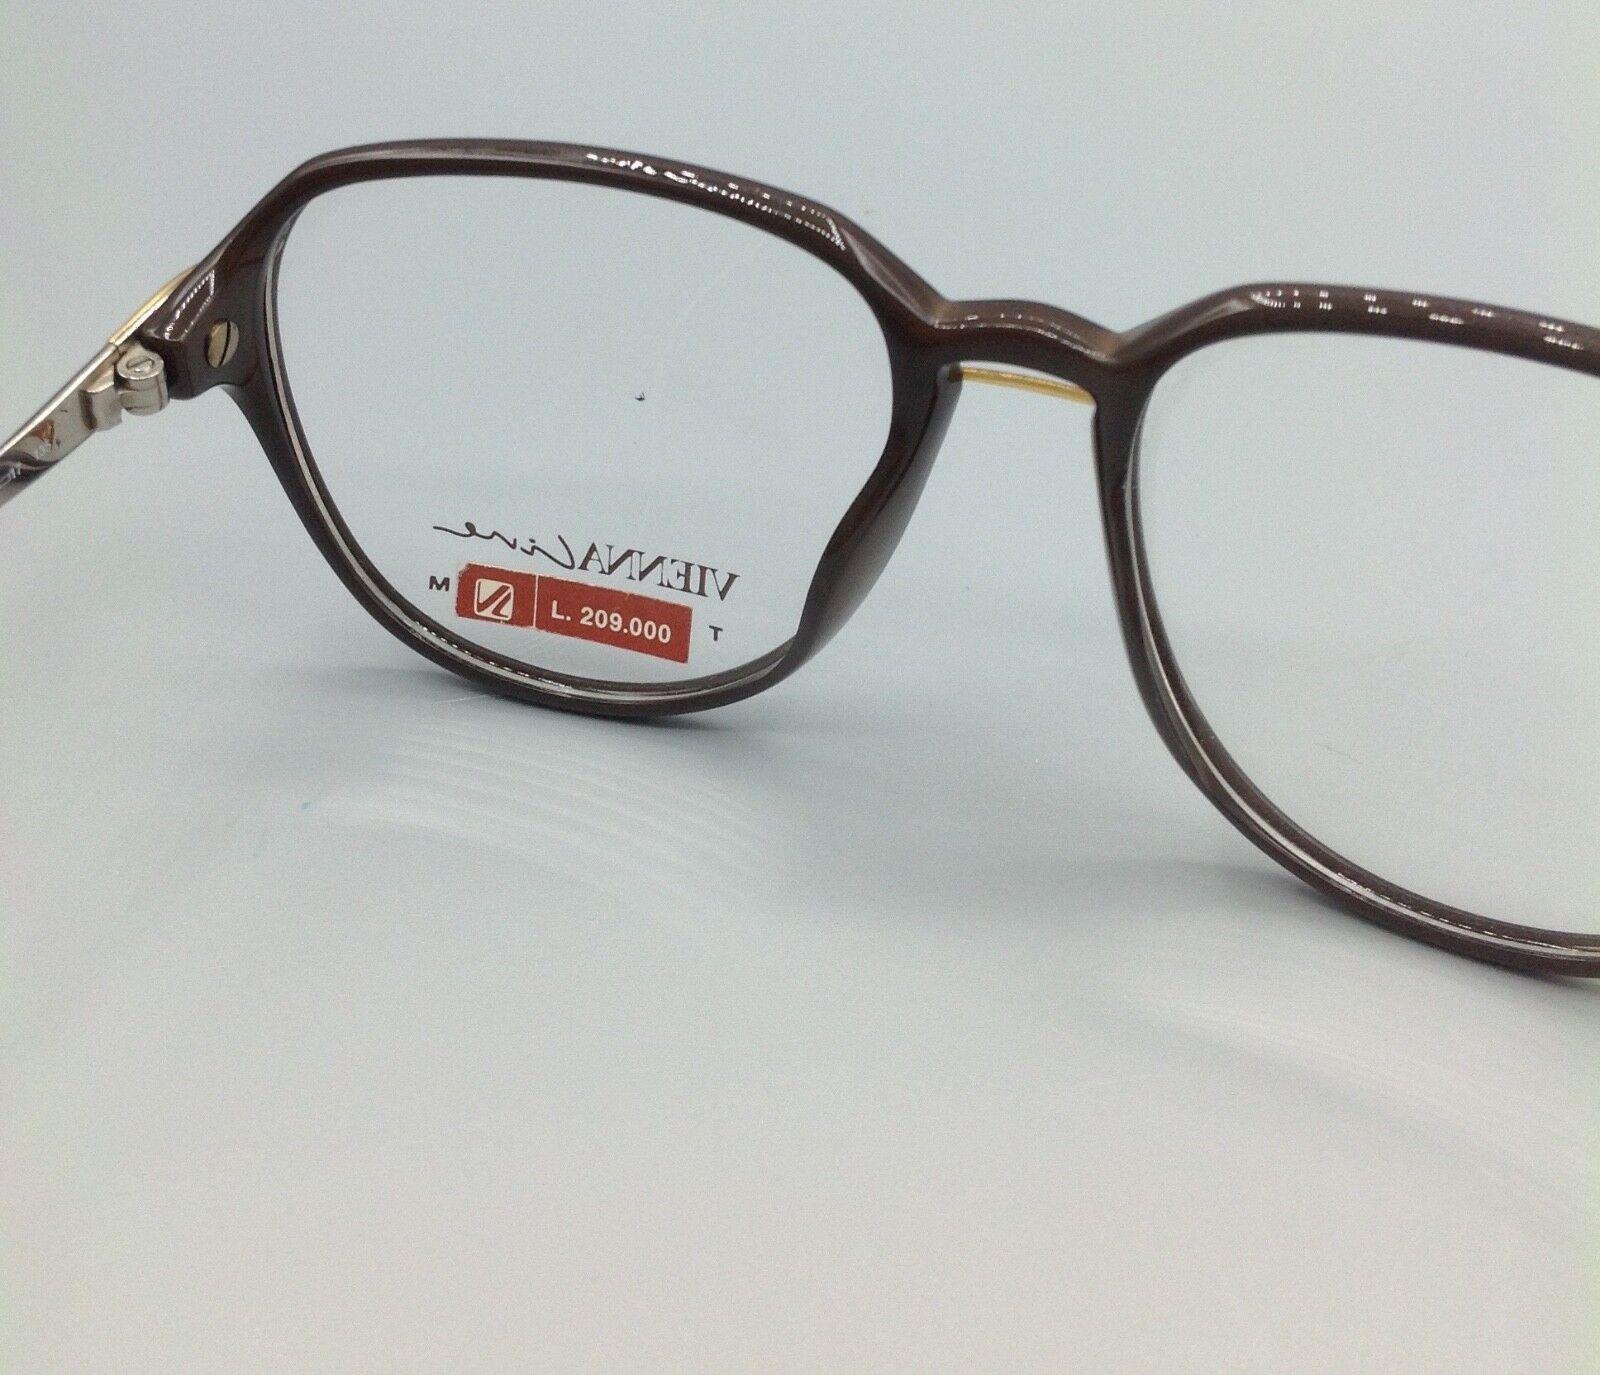 ViennaLine vintage occhiale eyewear mod.1377 20 brillen gafas lunettes